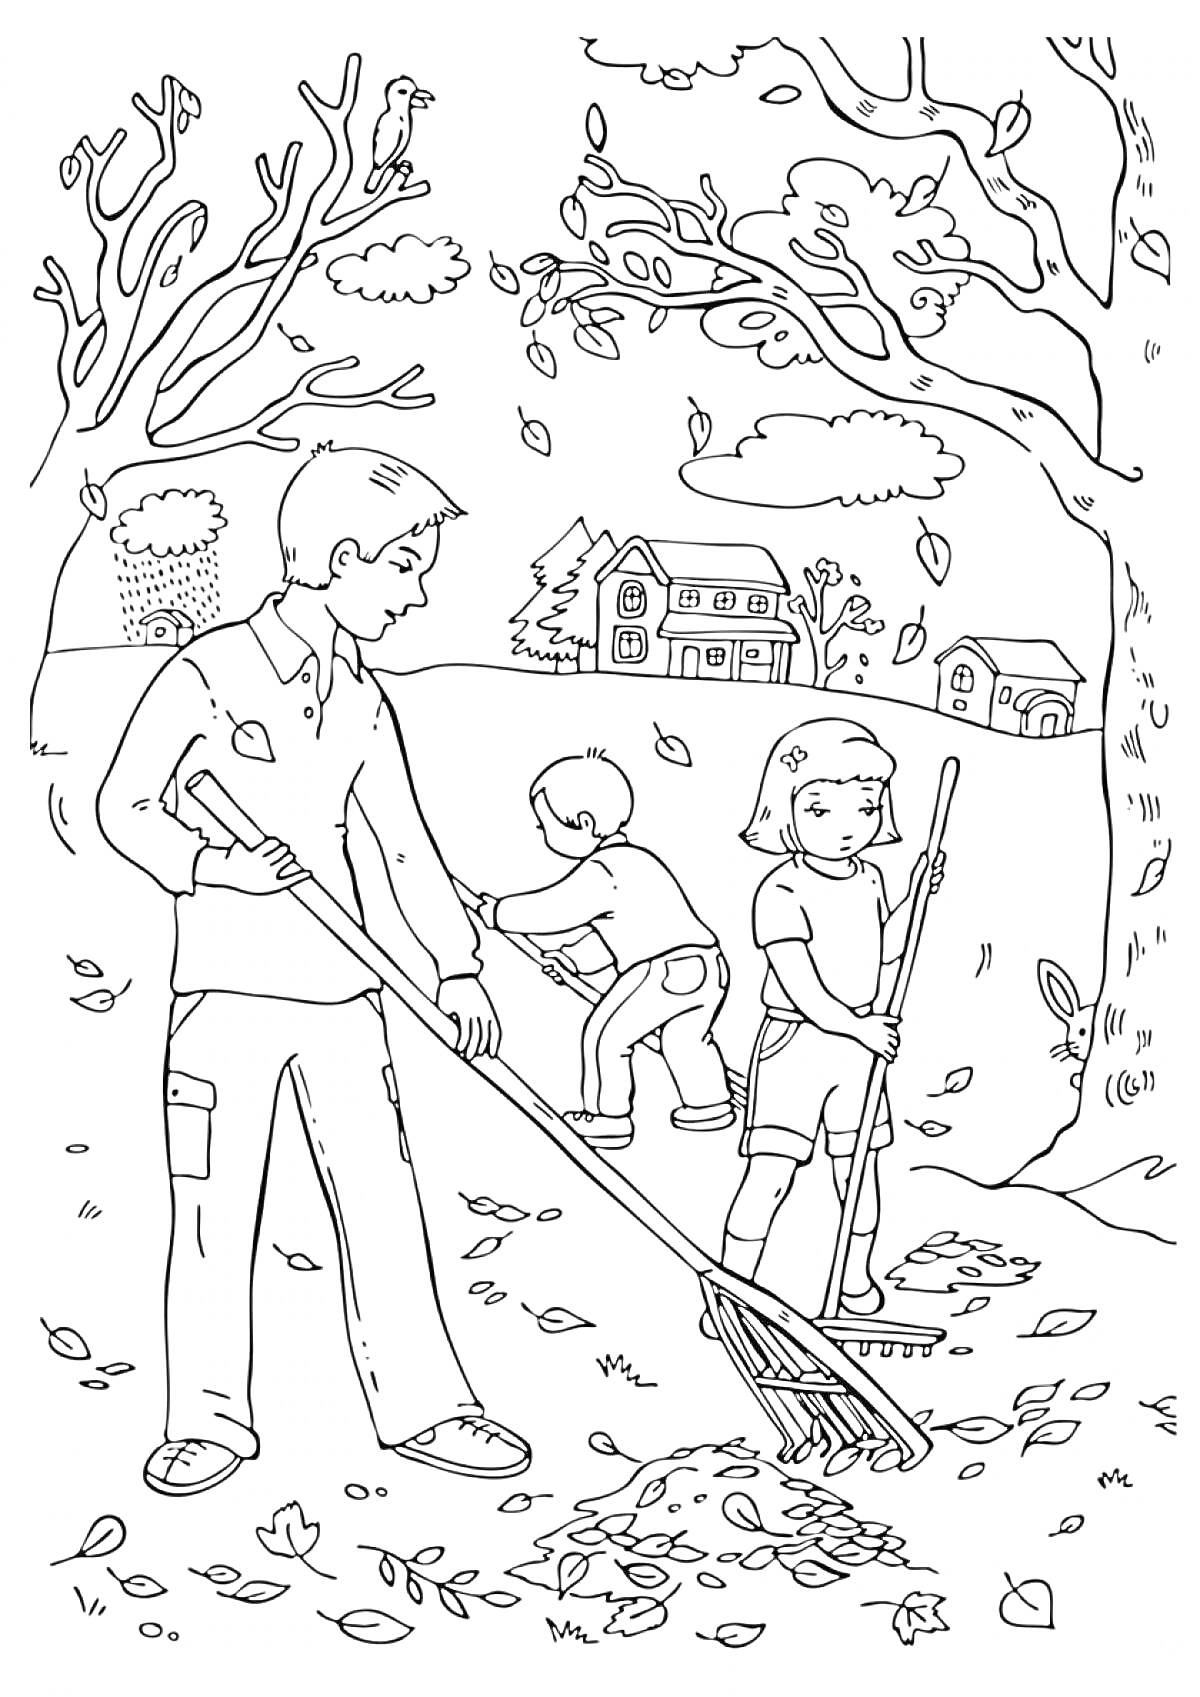 Раскраска Сбор осенних листьев в парке, мужчина и двое детей, грабли, дома на заднем плане, высокие деревья с опадающими листьями